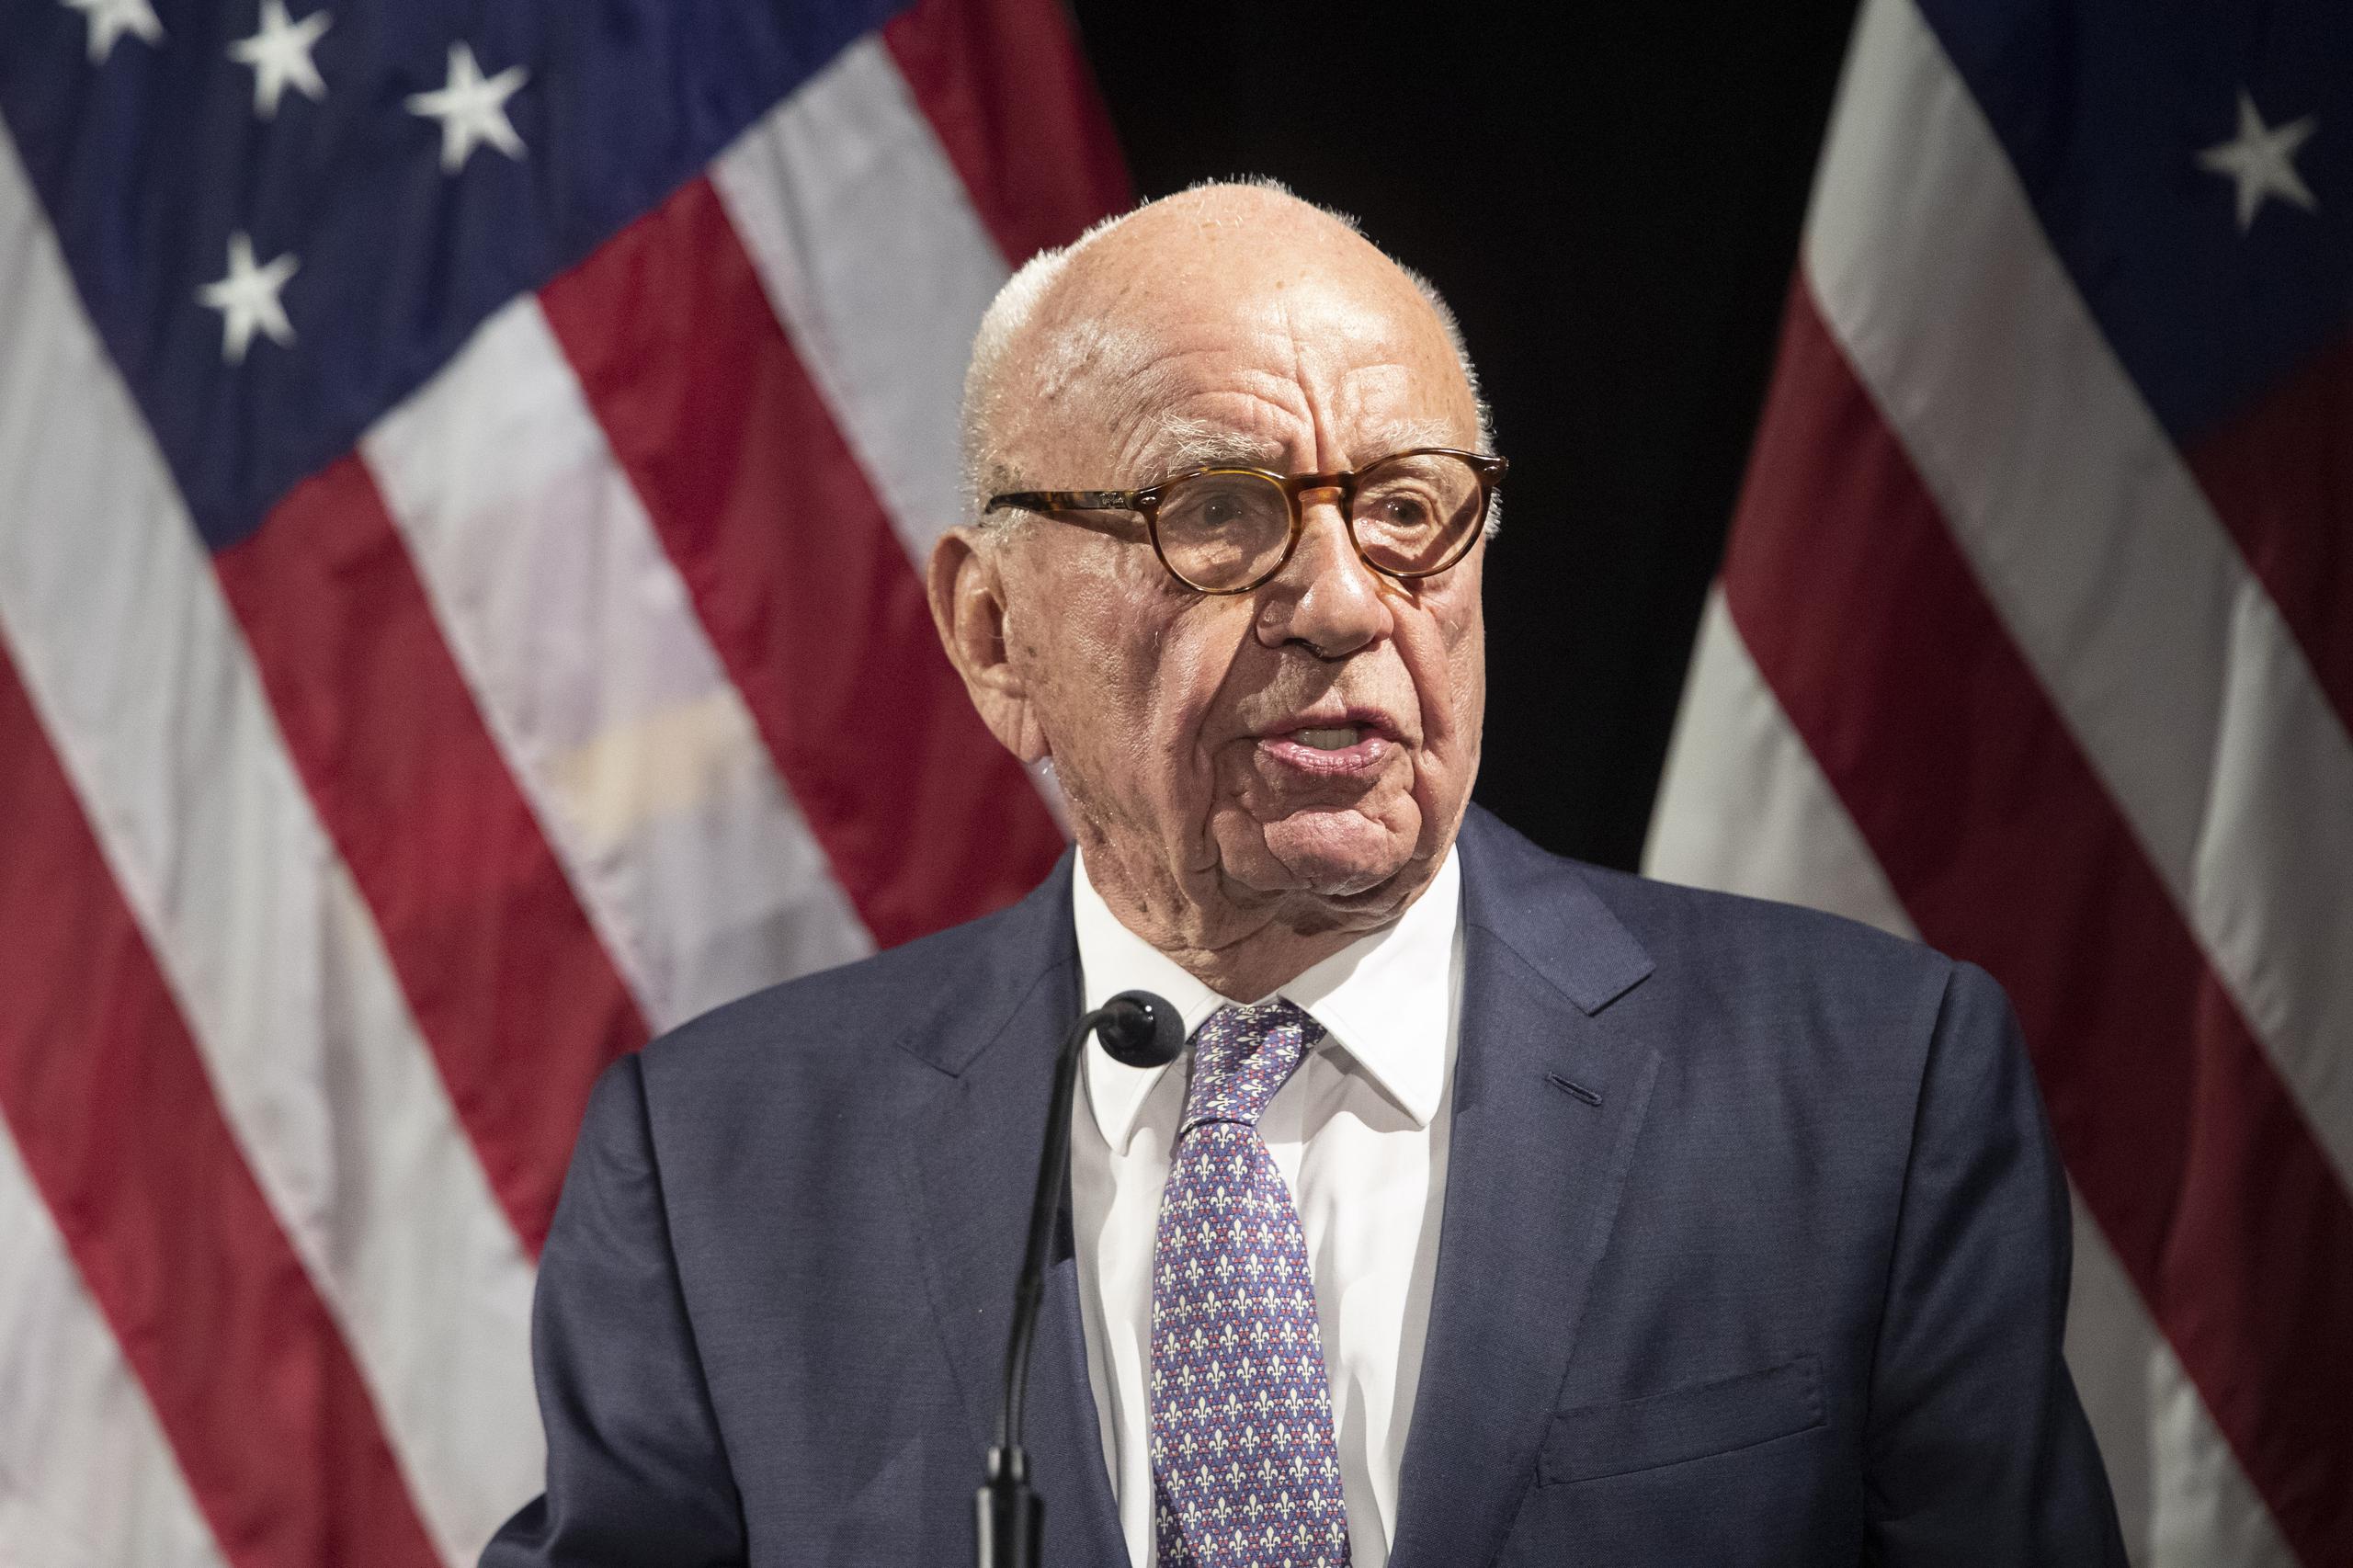 Las declaraciones de Rupert Murdoch, jefe de Fox Corp., ponen en duda las denuncias del expresidente Donald Trump tras tildar la contienda electoral pasada de fraudulenta.